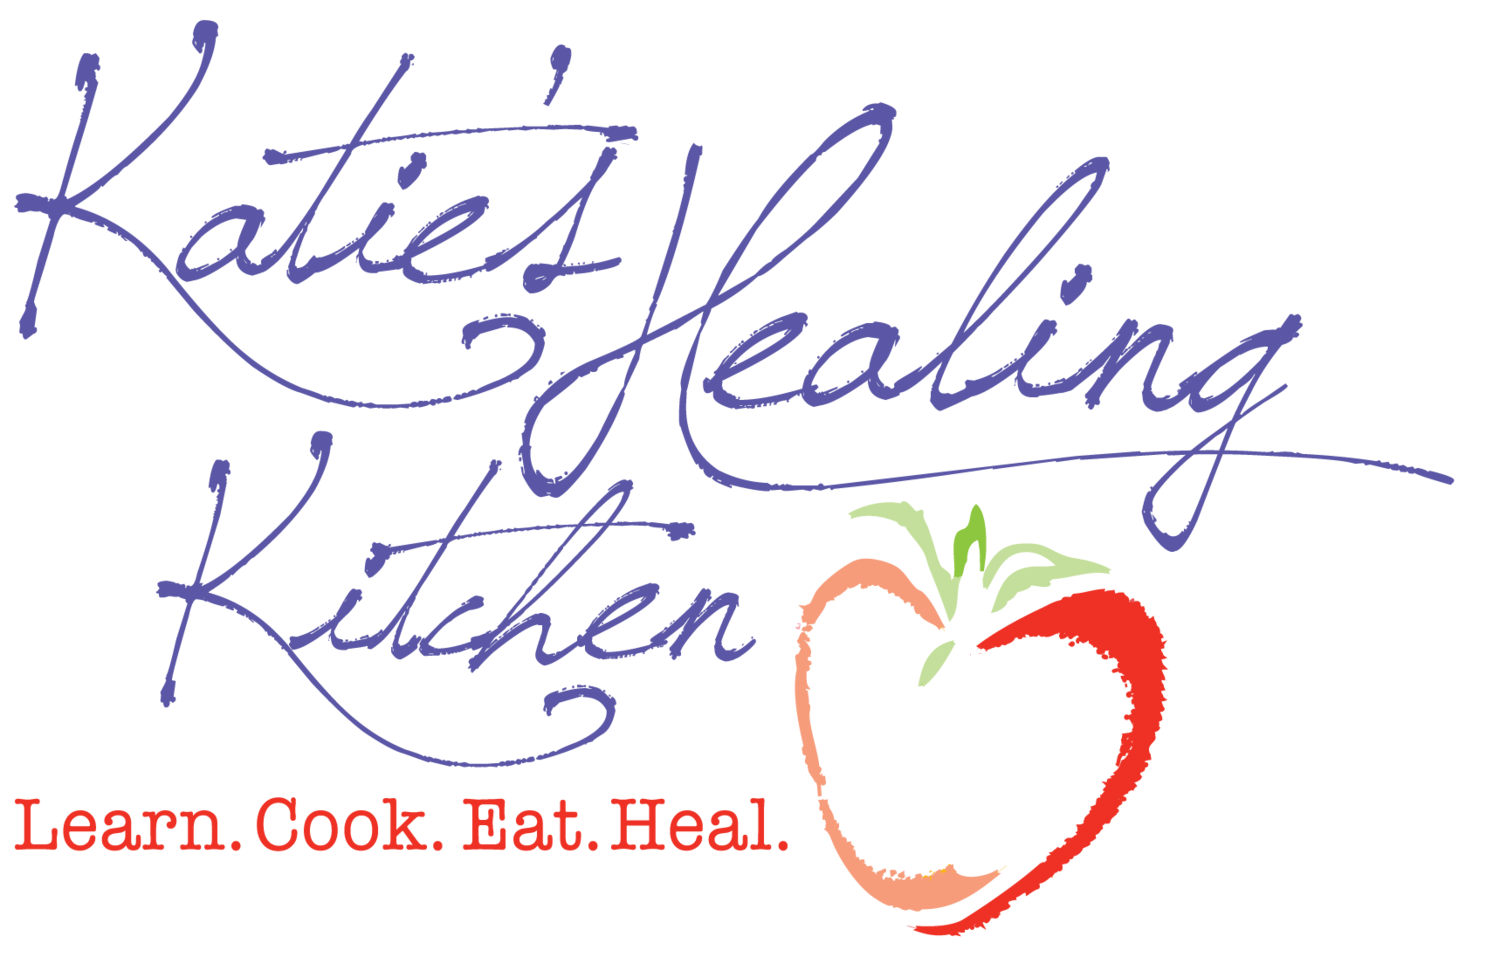 Katie's Healing Kitchen